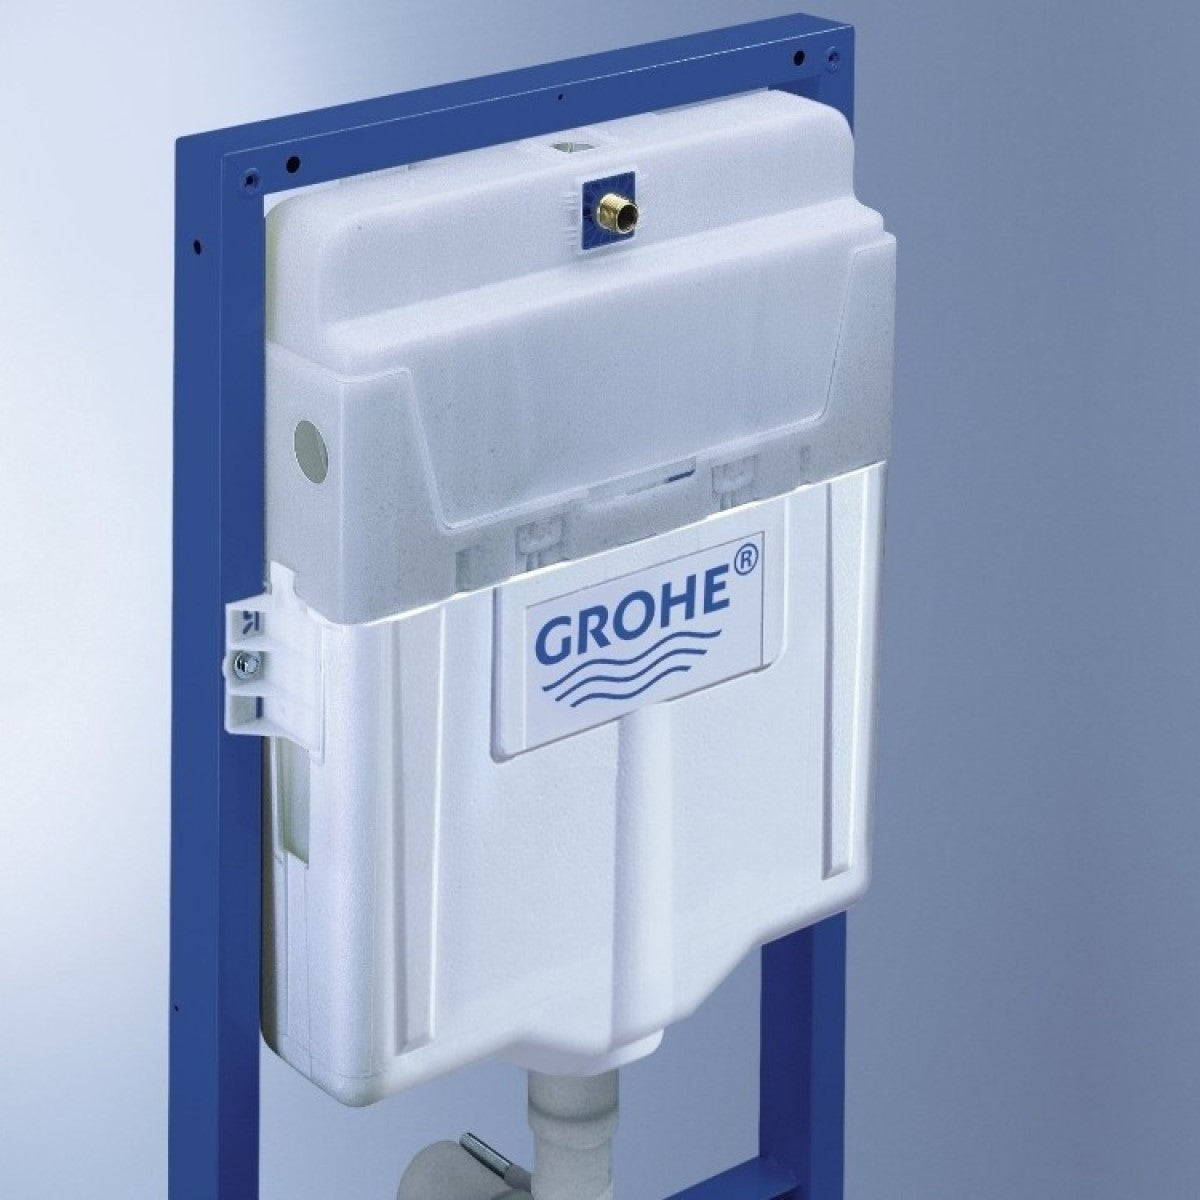 Podometni splakovalniki 38528001 Grohe Rapid SL podometni splakovalnik za WC školjko | KOPALNICA-ONLINE.SI